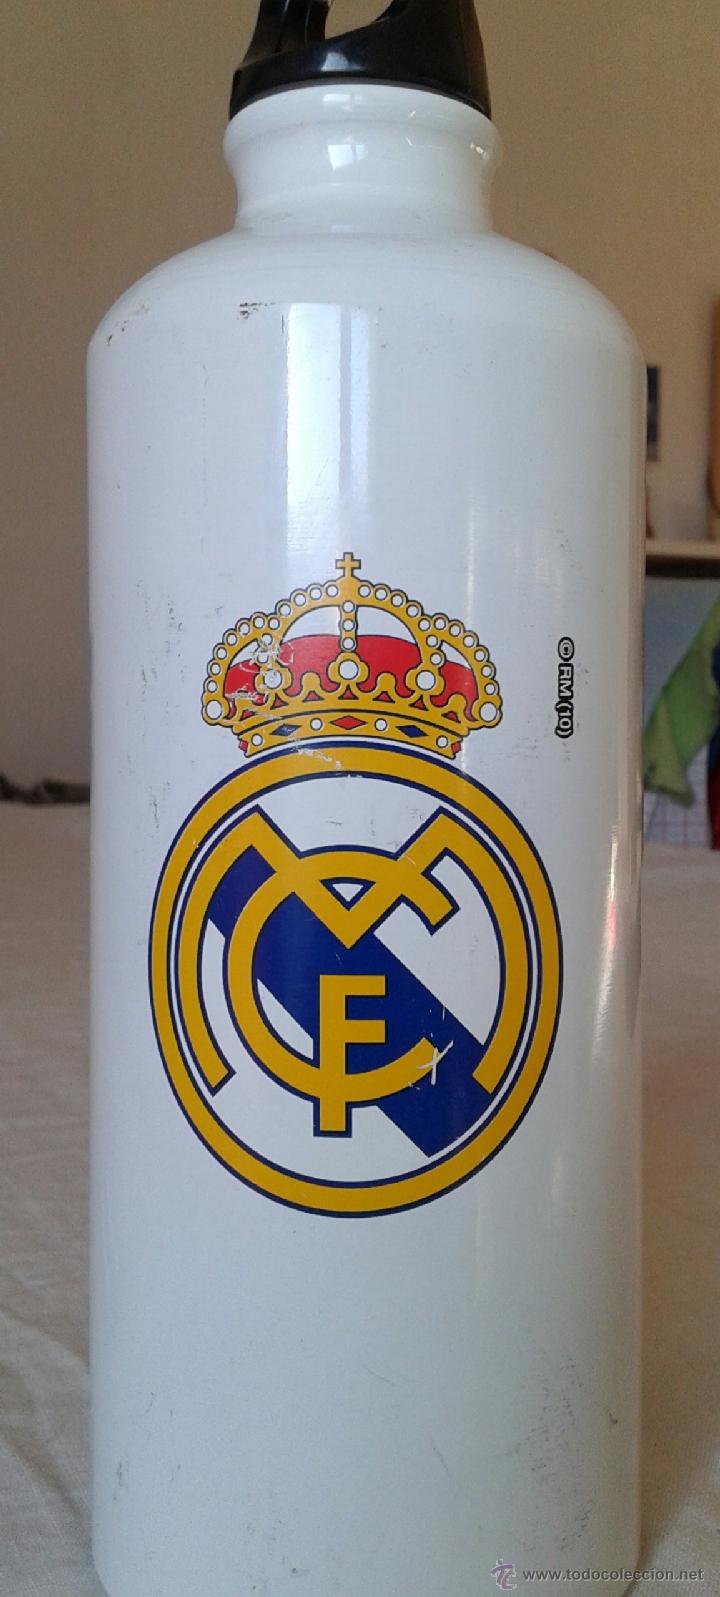 Botella Personalizada Real Madrid I - La Cesta Magica